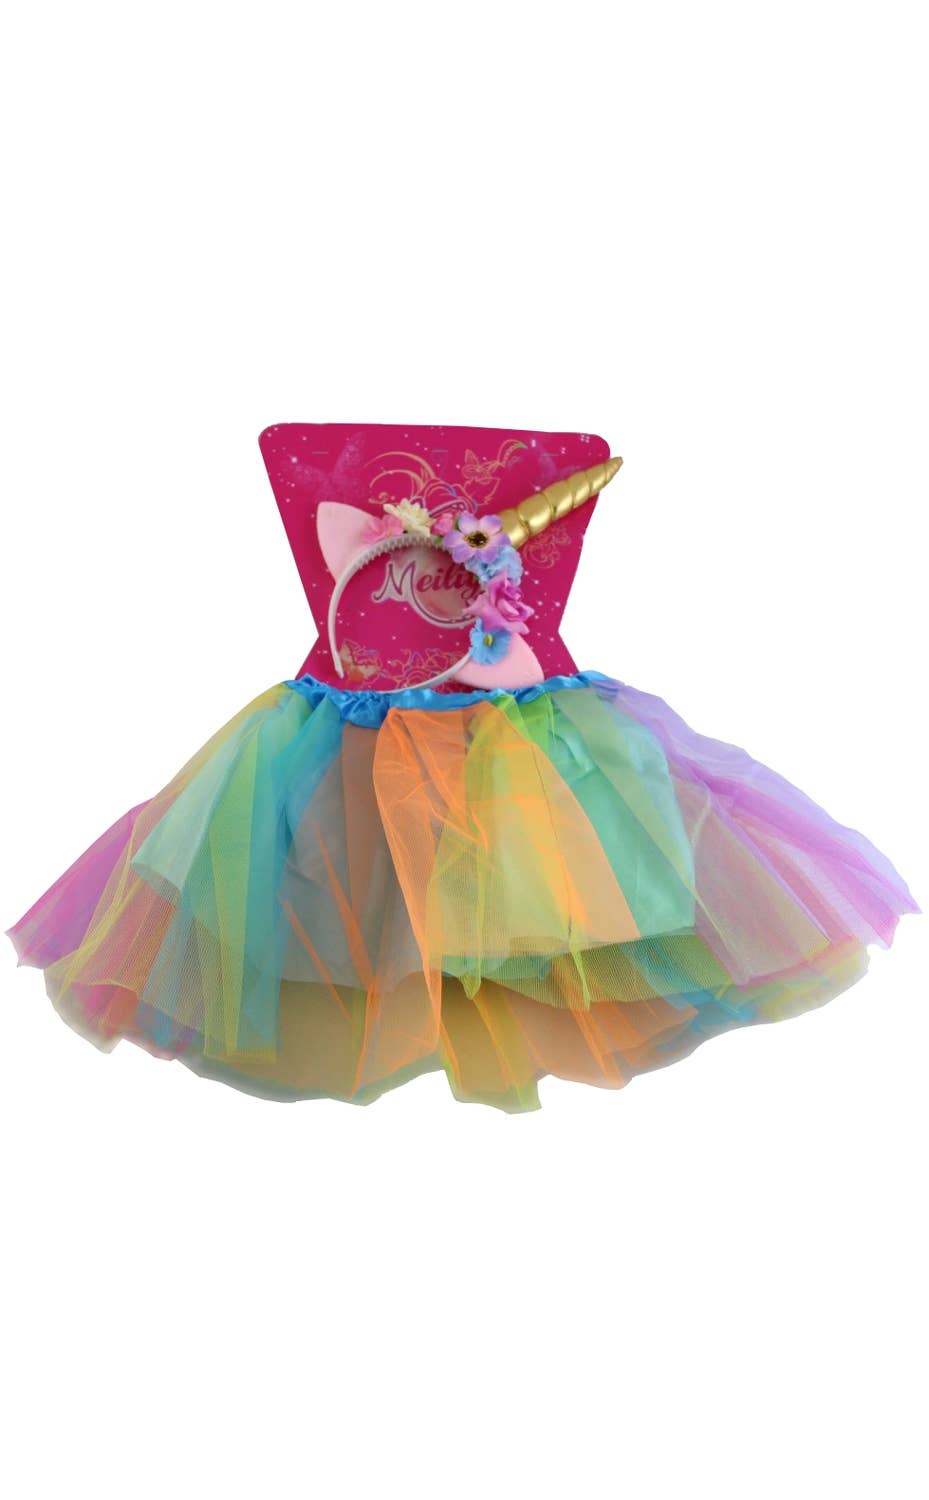 Girl-s Unicorn Costume Petticoat and Headband Set - Alternate View